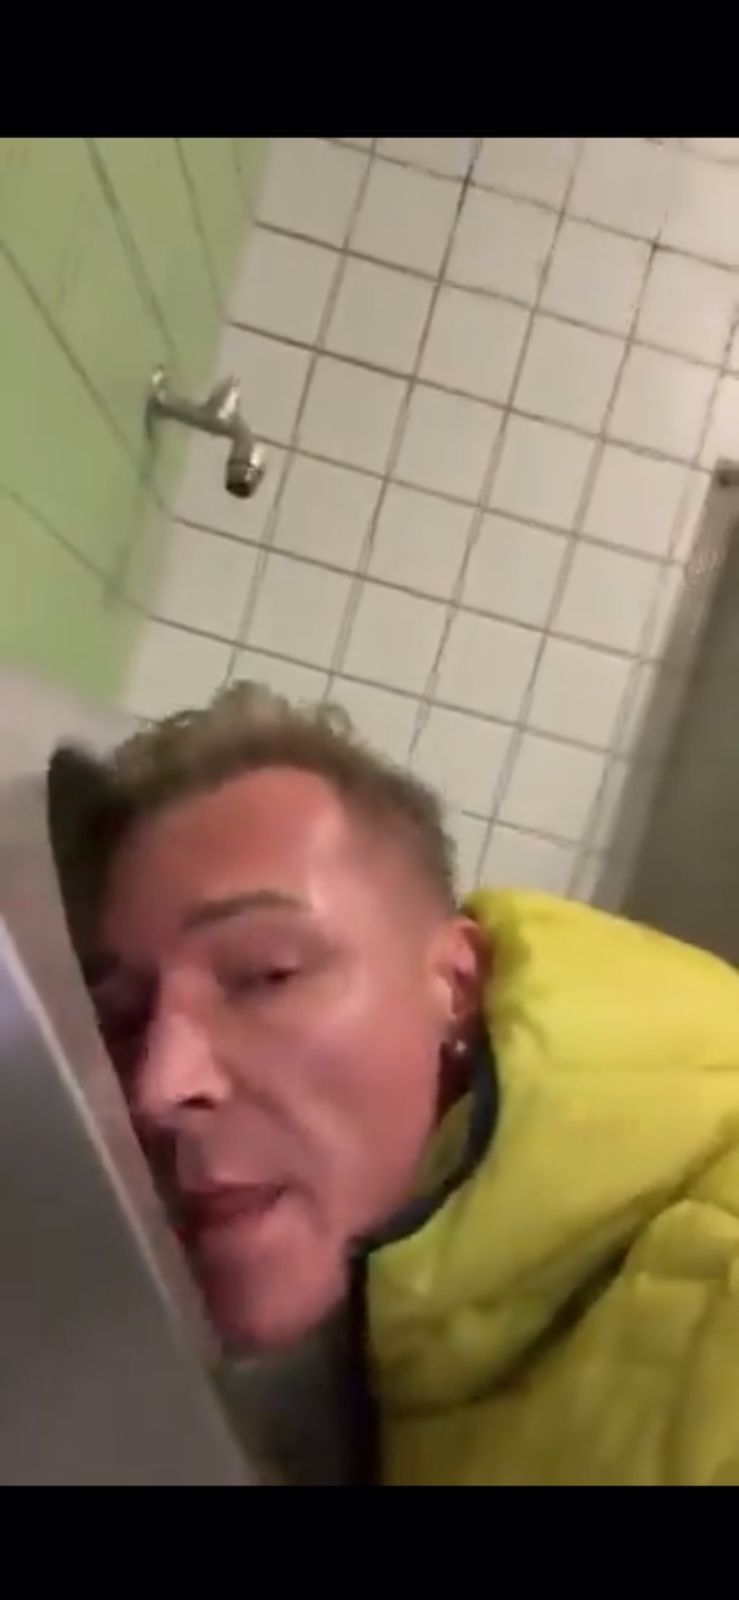 Ein deutscher Politiker geht viral, indem er Toiletten und Urinale in einer öffentlichen Toilette leckt